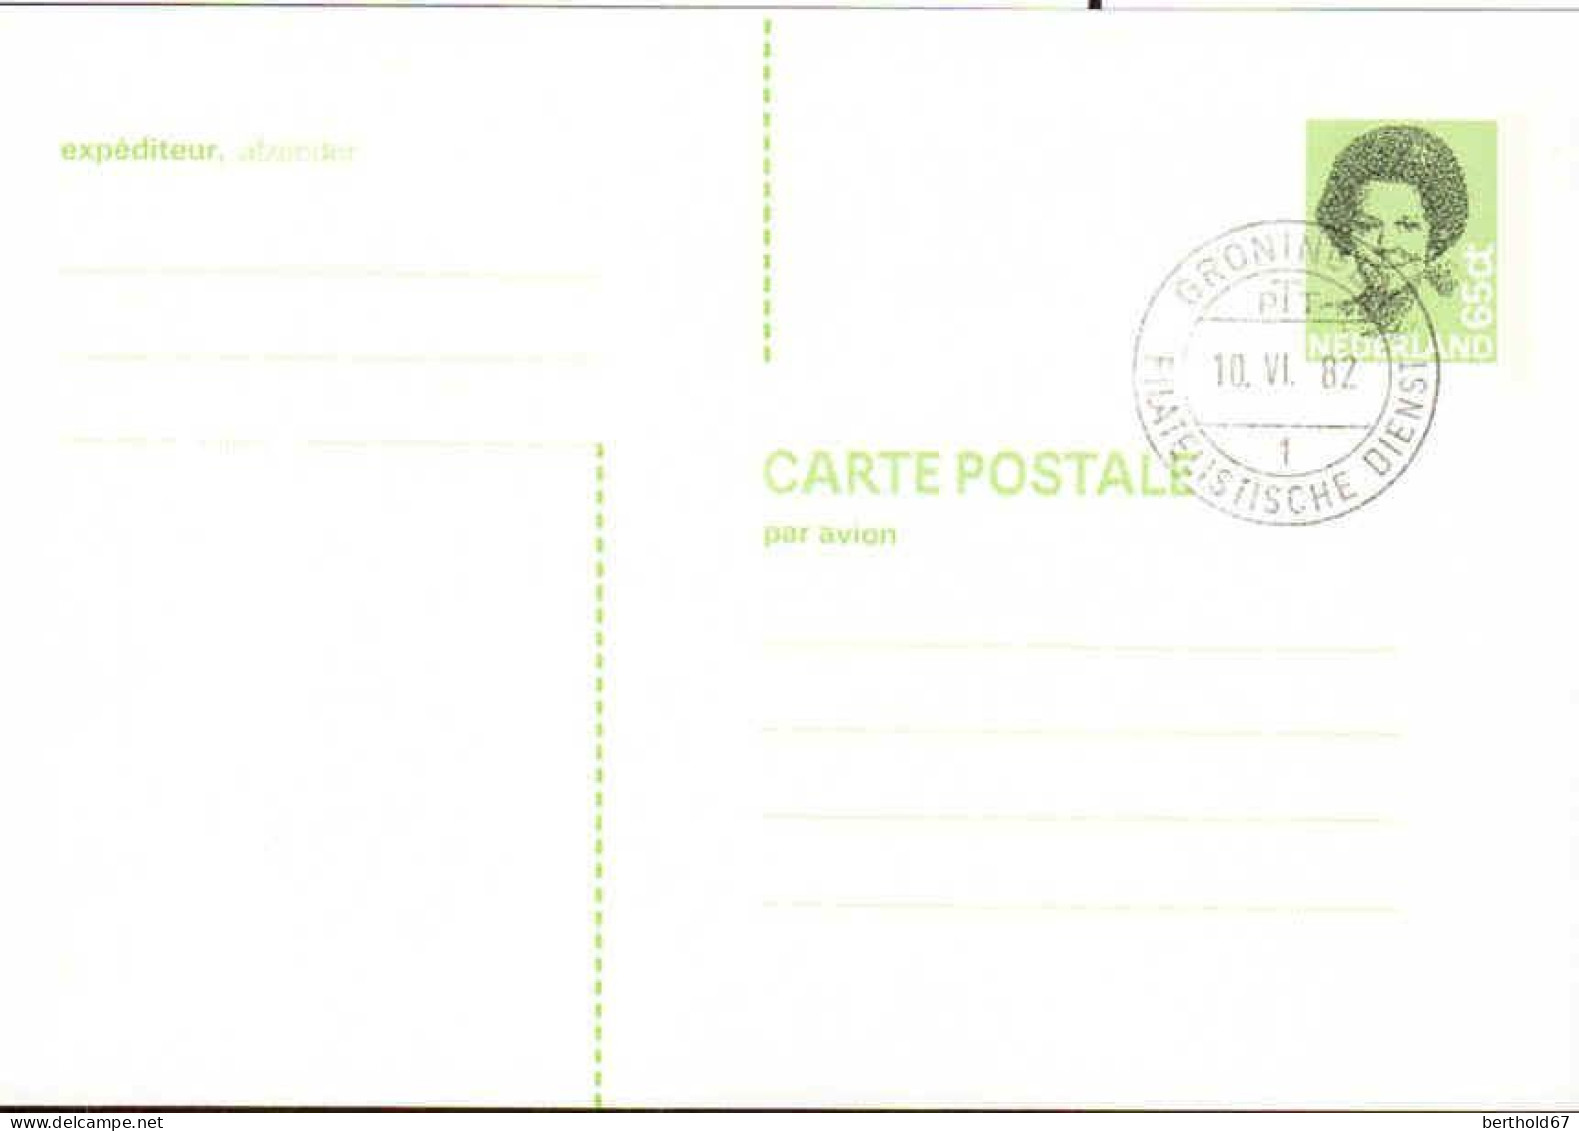 Pays-Bas Entier-P Obl (29) Carte Postale Reine Beatrix 148*102 65ct (TB Cachet à Date) - Interi Postali